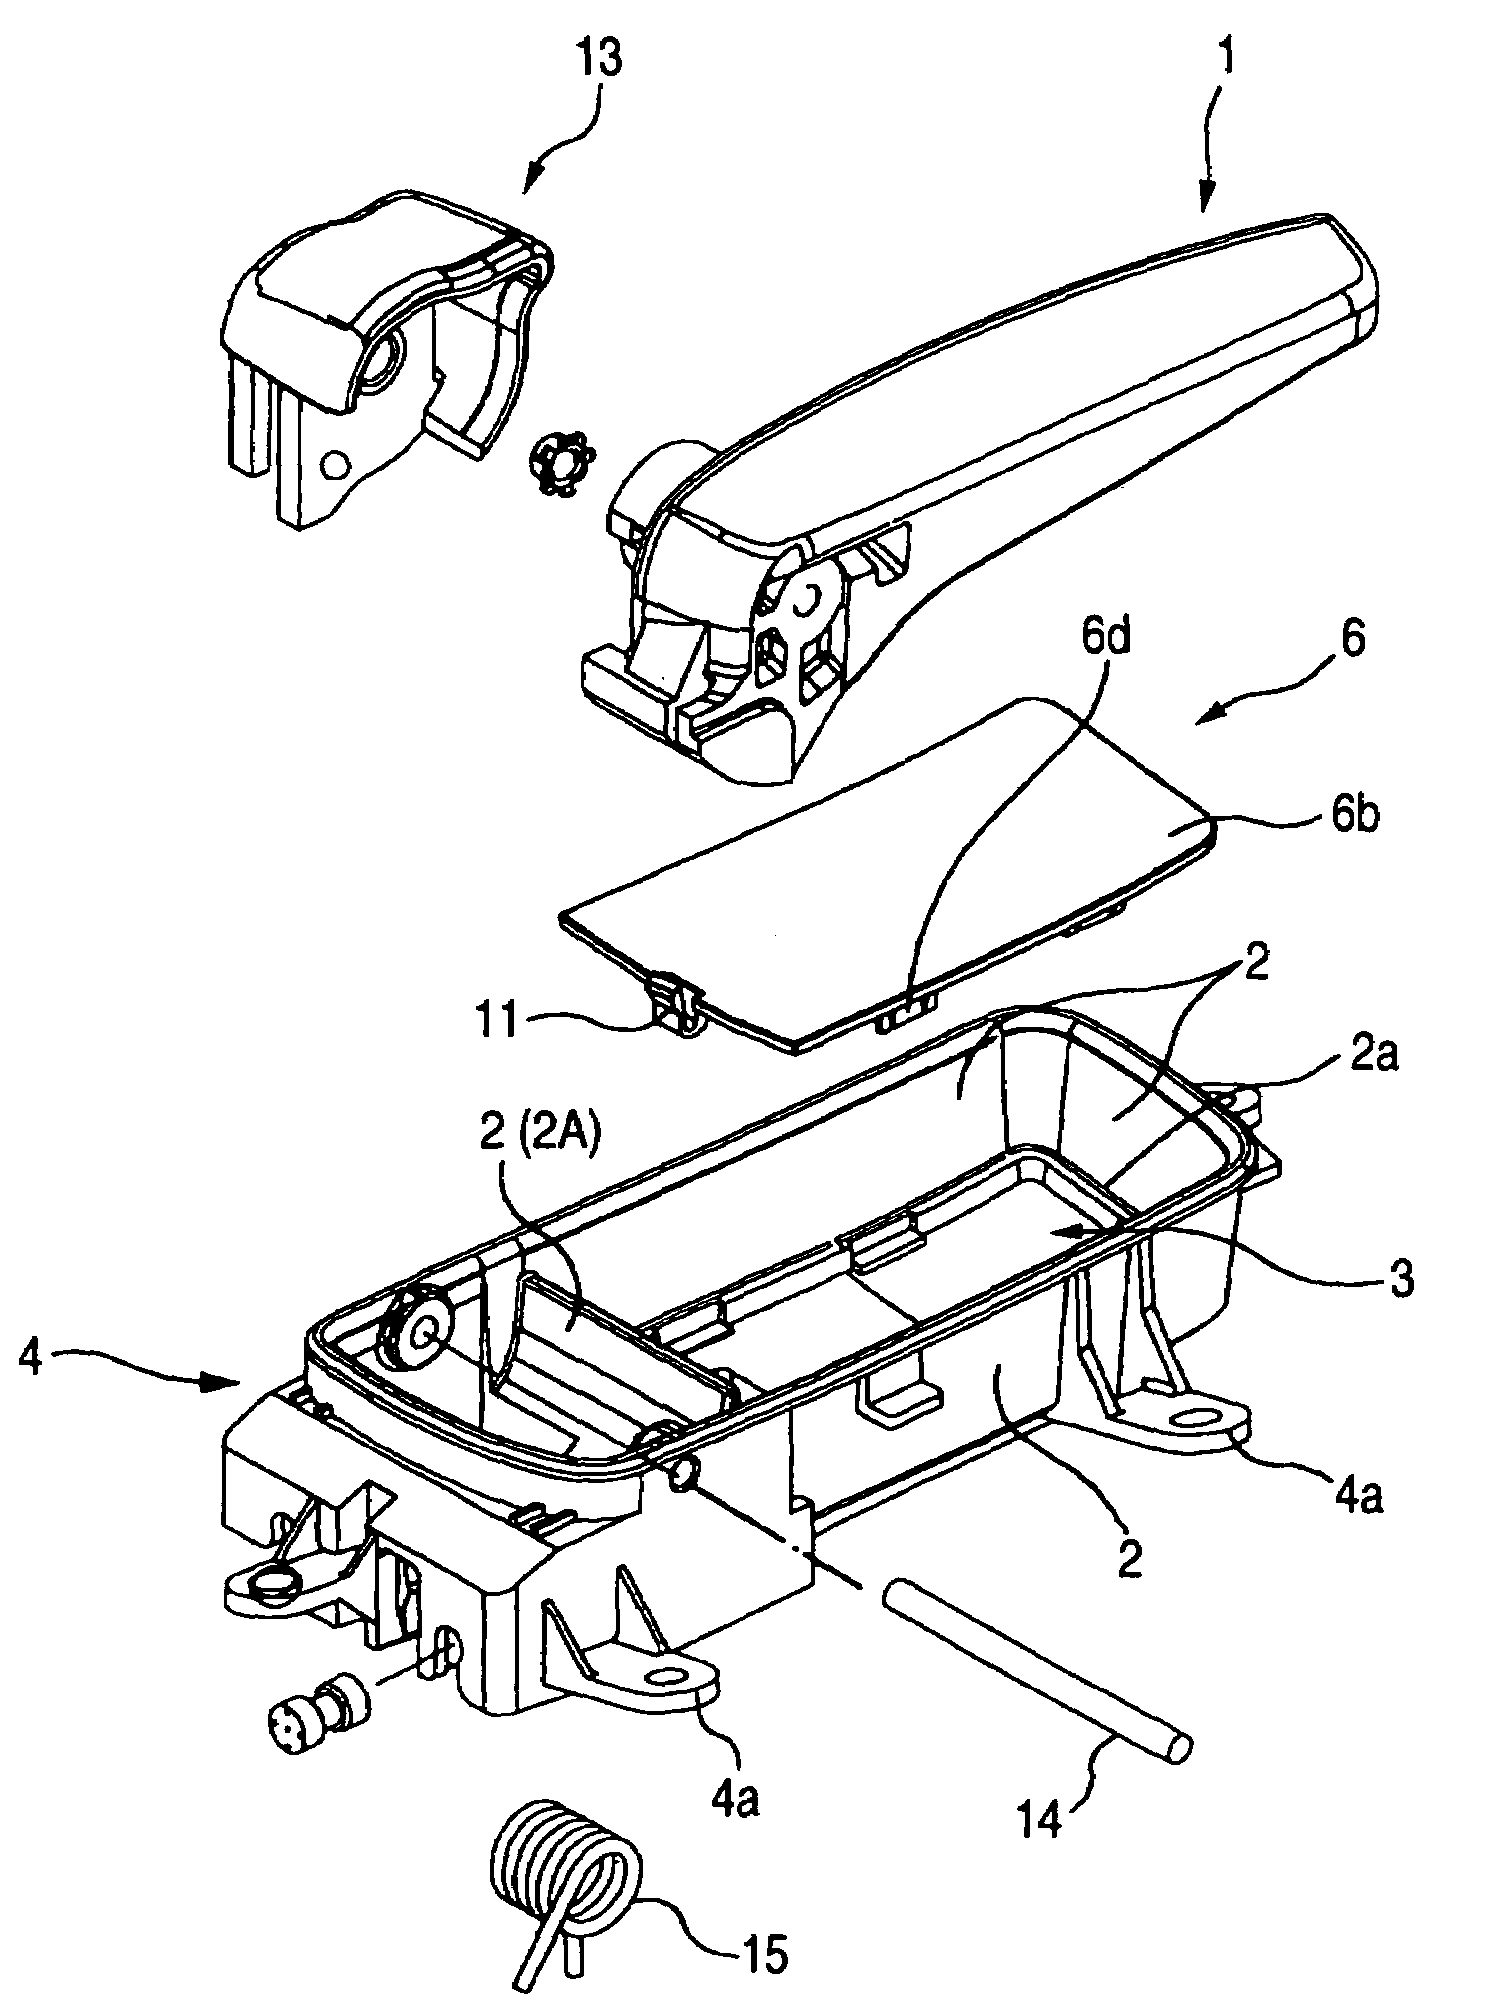 Inside door handle device of automobile